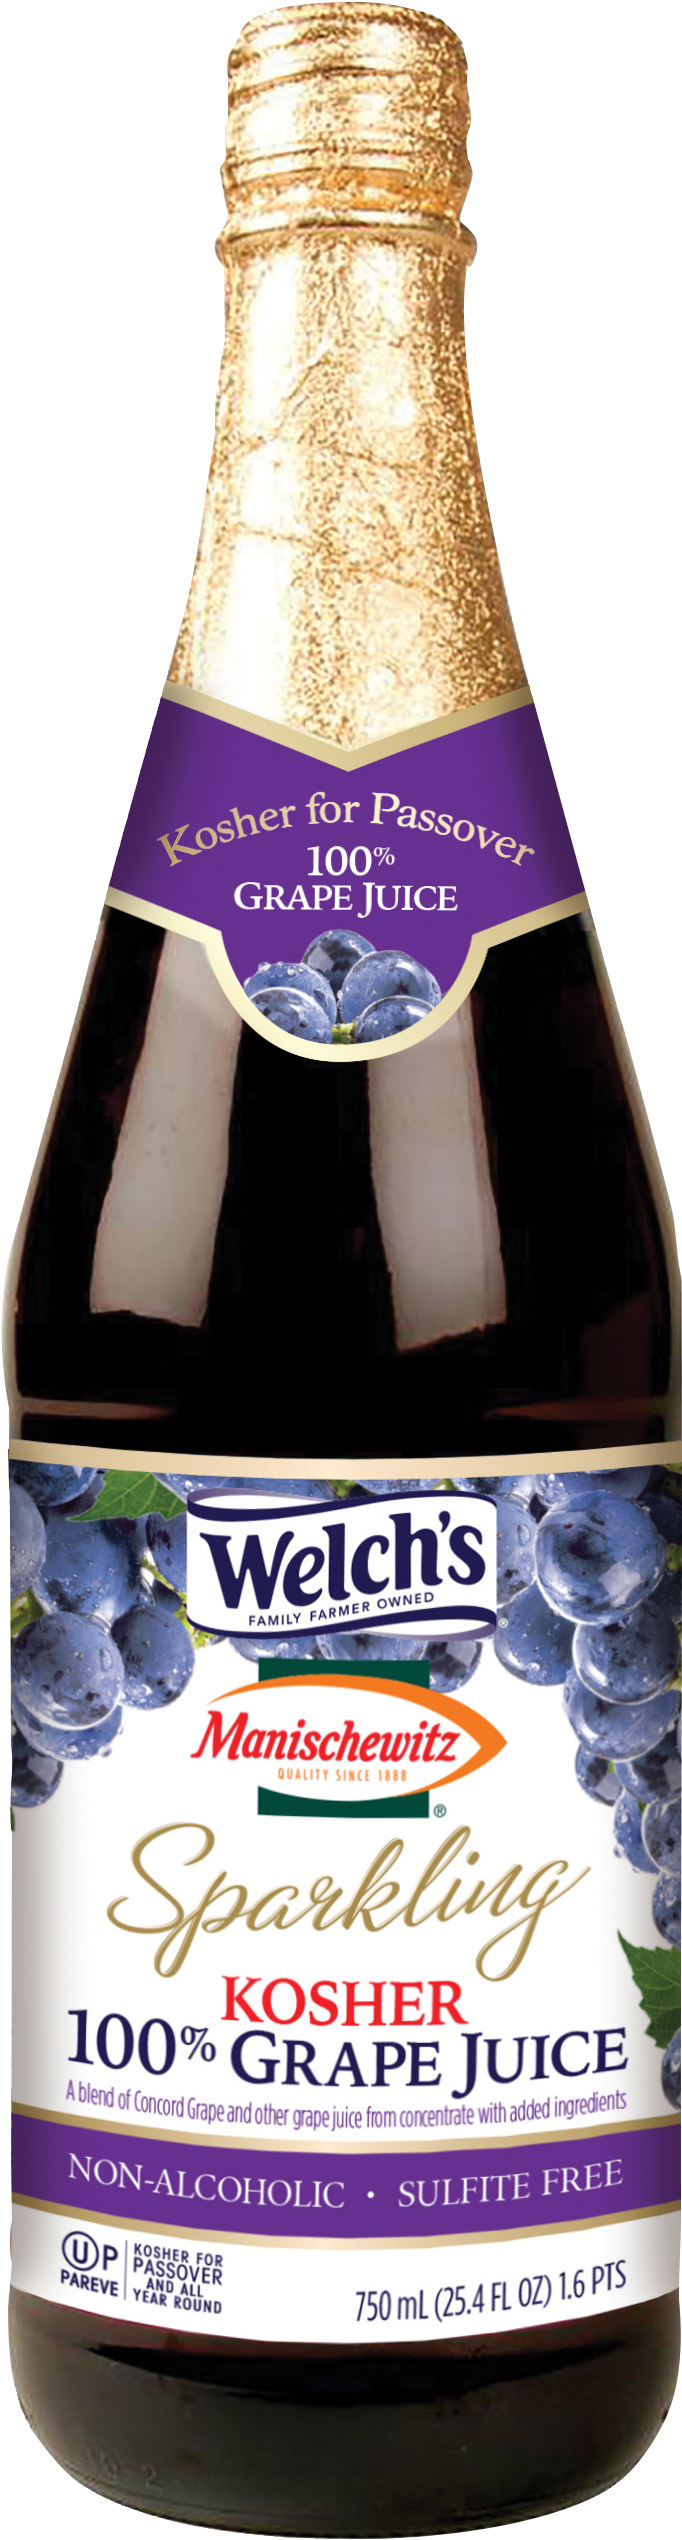 Welchs Kosher Sparkling Grape Juice Bottle PNG